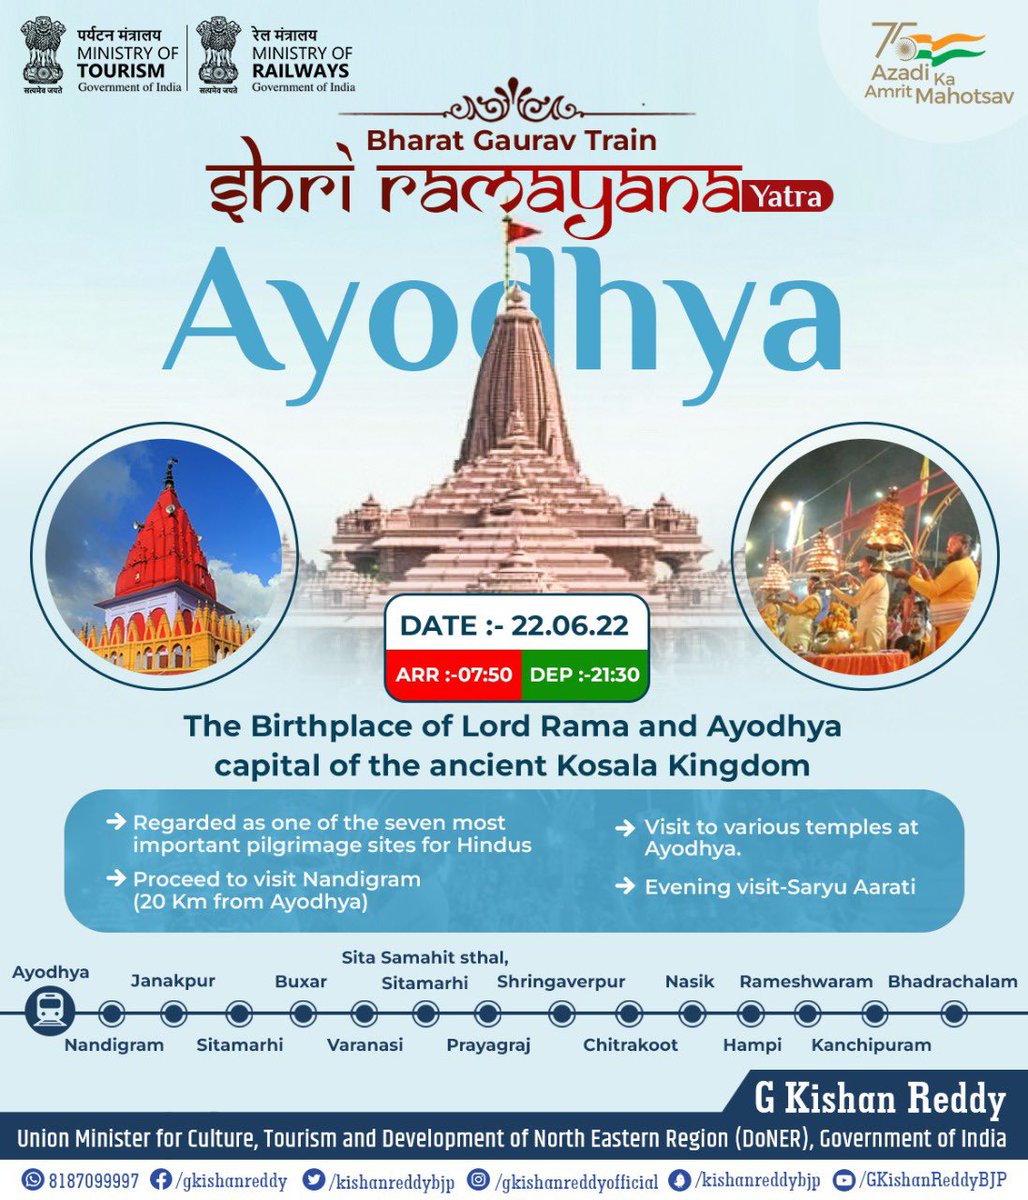 Ayodhya Photo,Ayodhya Photo by G Kishan Reddy,G Kishan Reddy on twitter tweets Ayodhya Photo